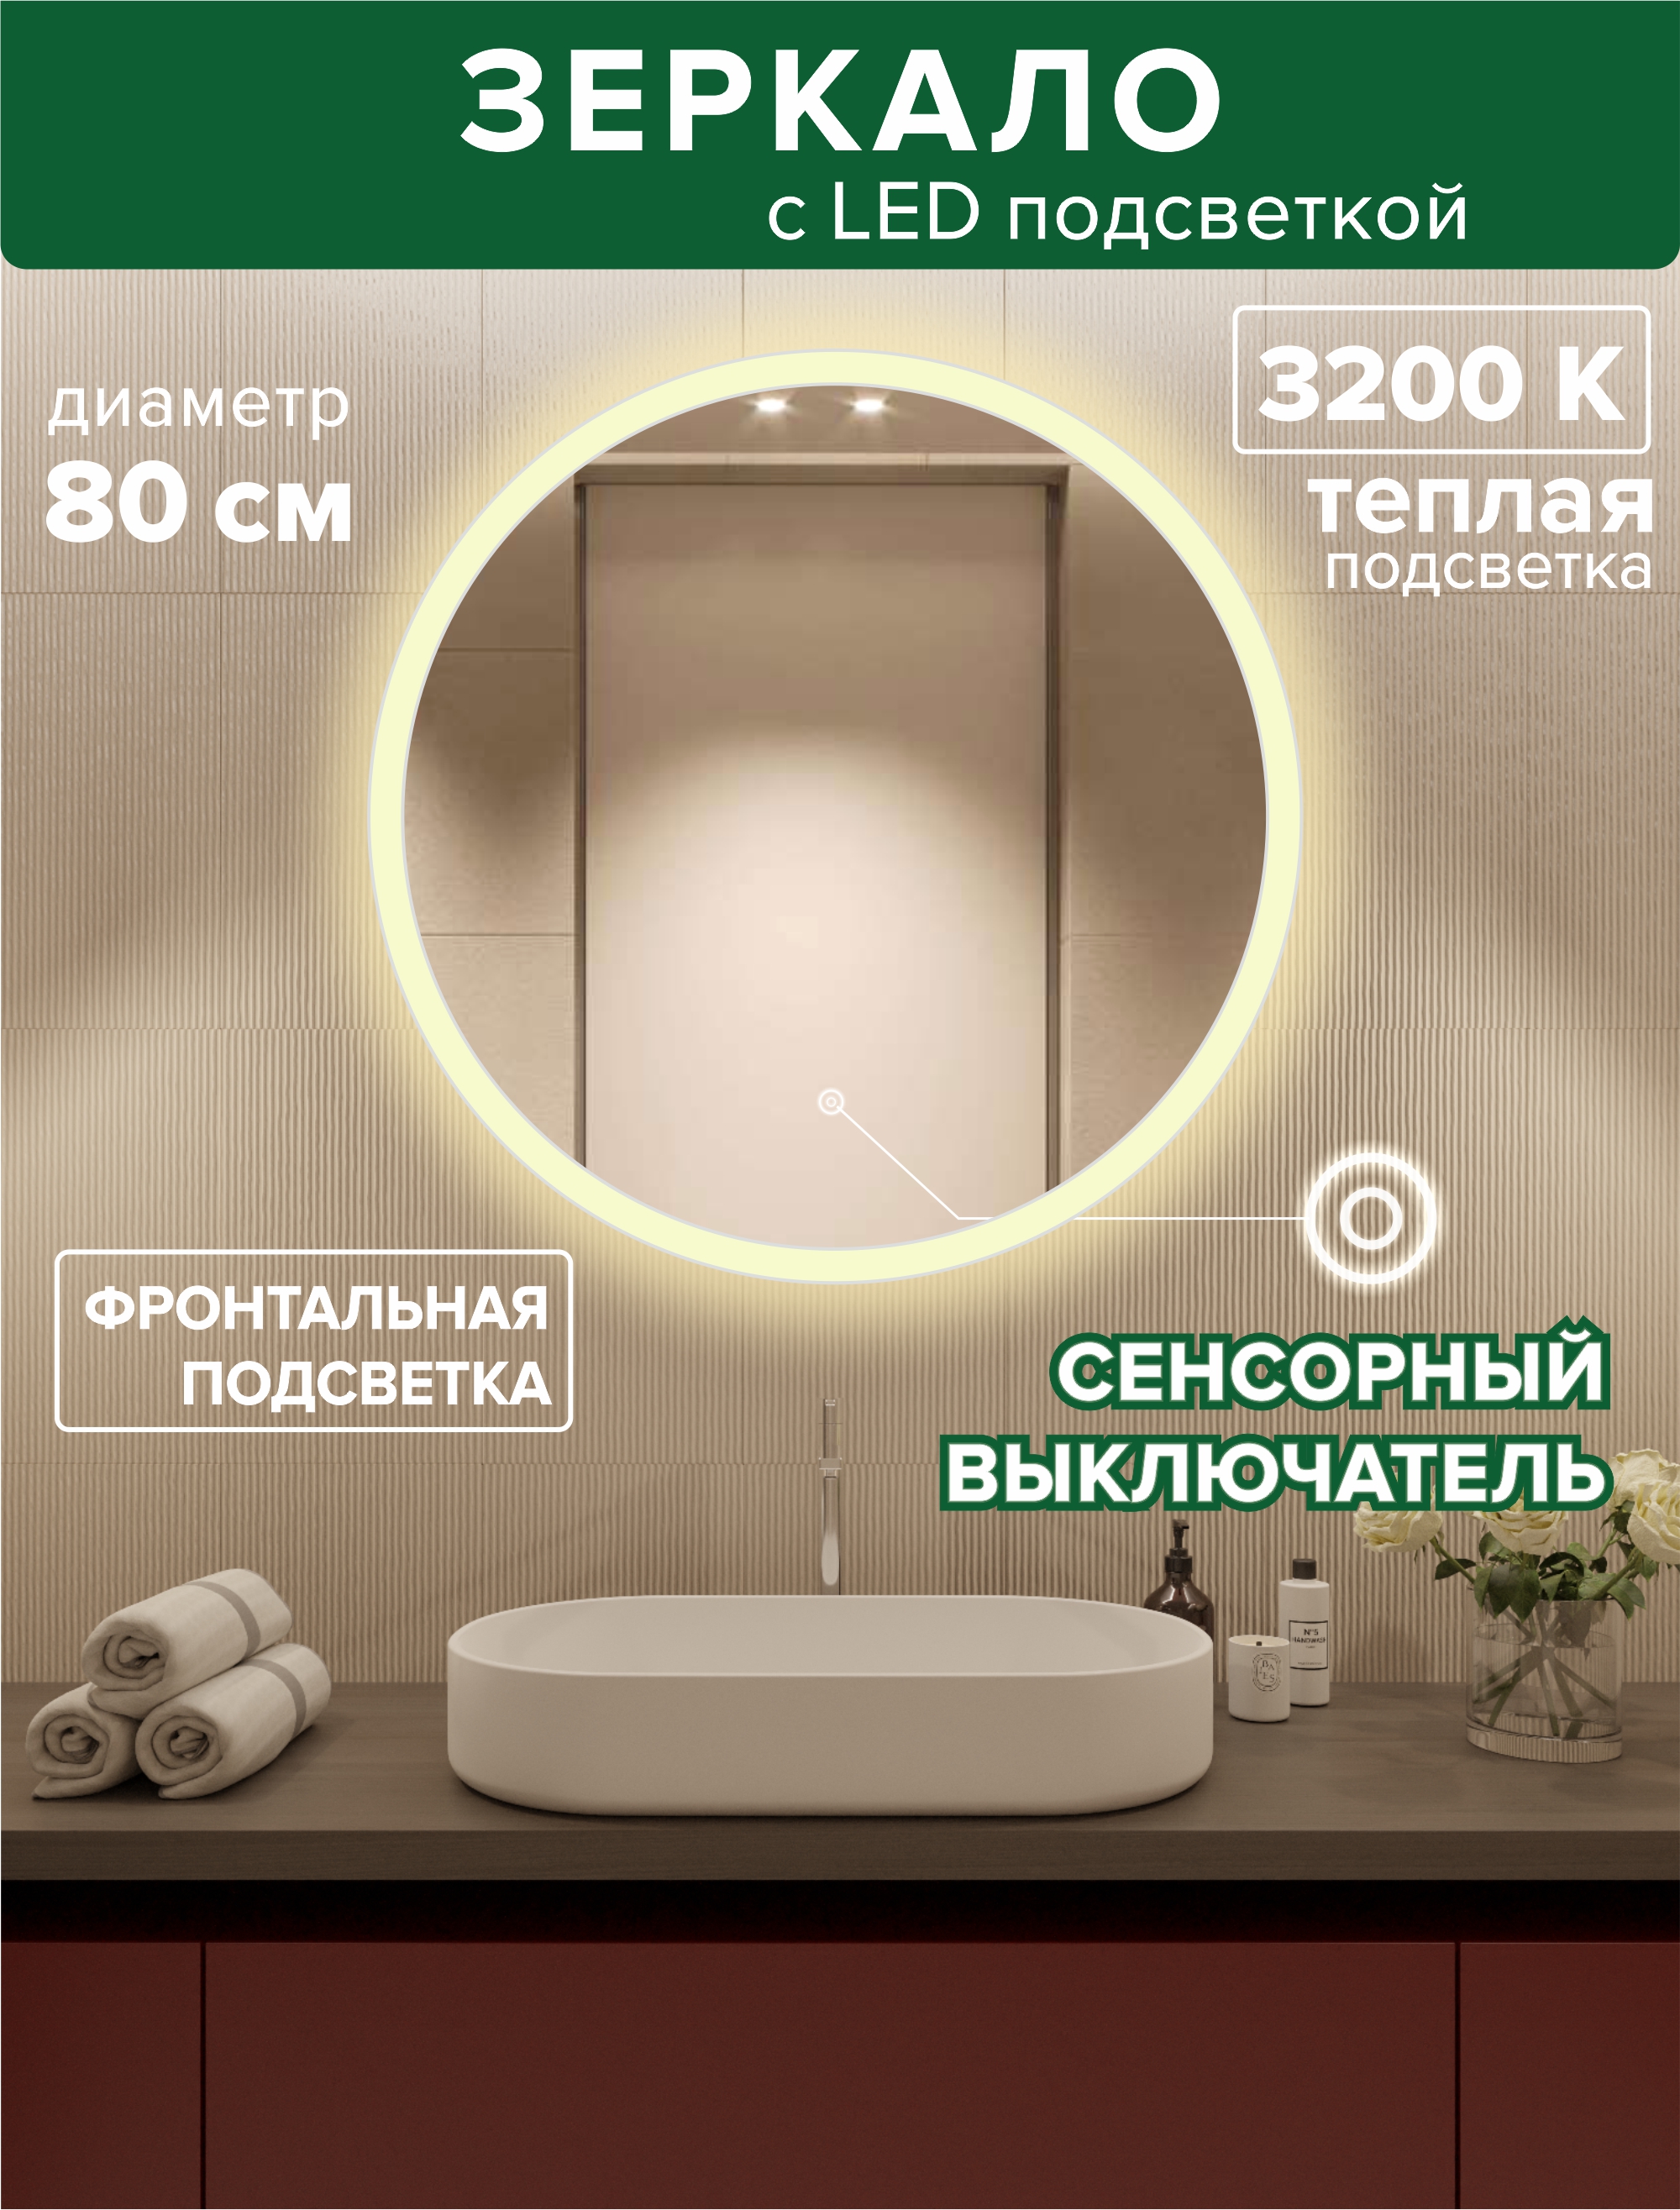 Зеркало для ванной Alfa Mirrors фронтальная теплая подсветка 3200К, круглое 80см, MSvet-8t led pls 100 10m 240v ww c f ww белая теплая прозр пров белый теплый flash ip 54 соединяемая